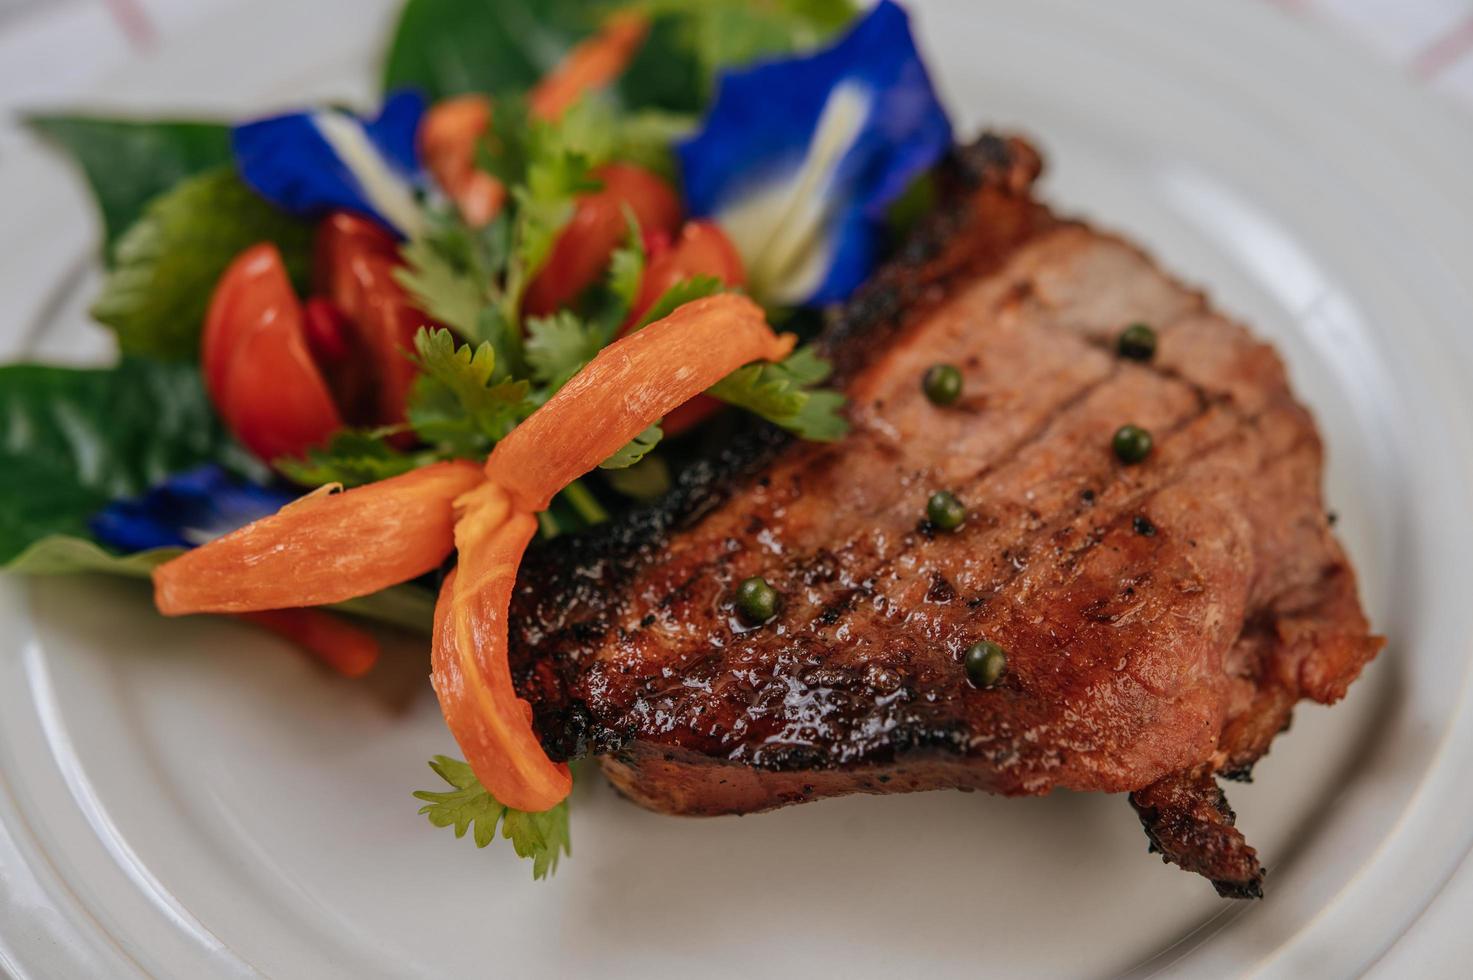 steak de porc à la tomate, carotte, oignon rouge, menthe poivrée, fleur de pois papillon et citron vert photo